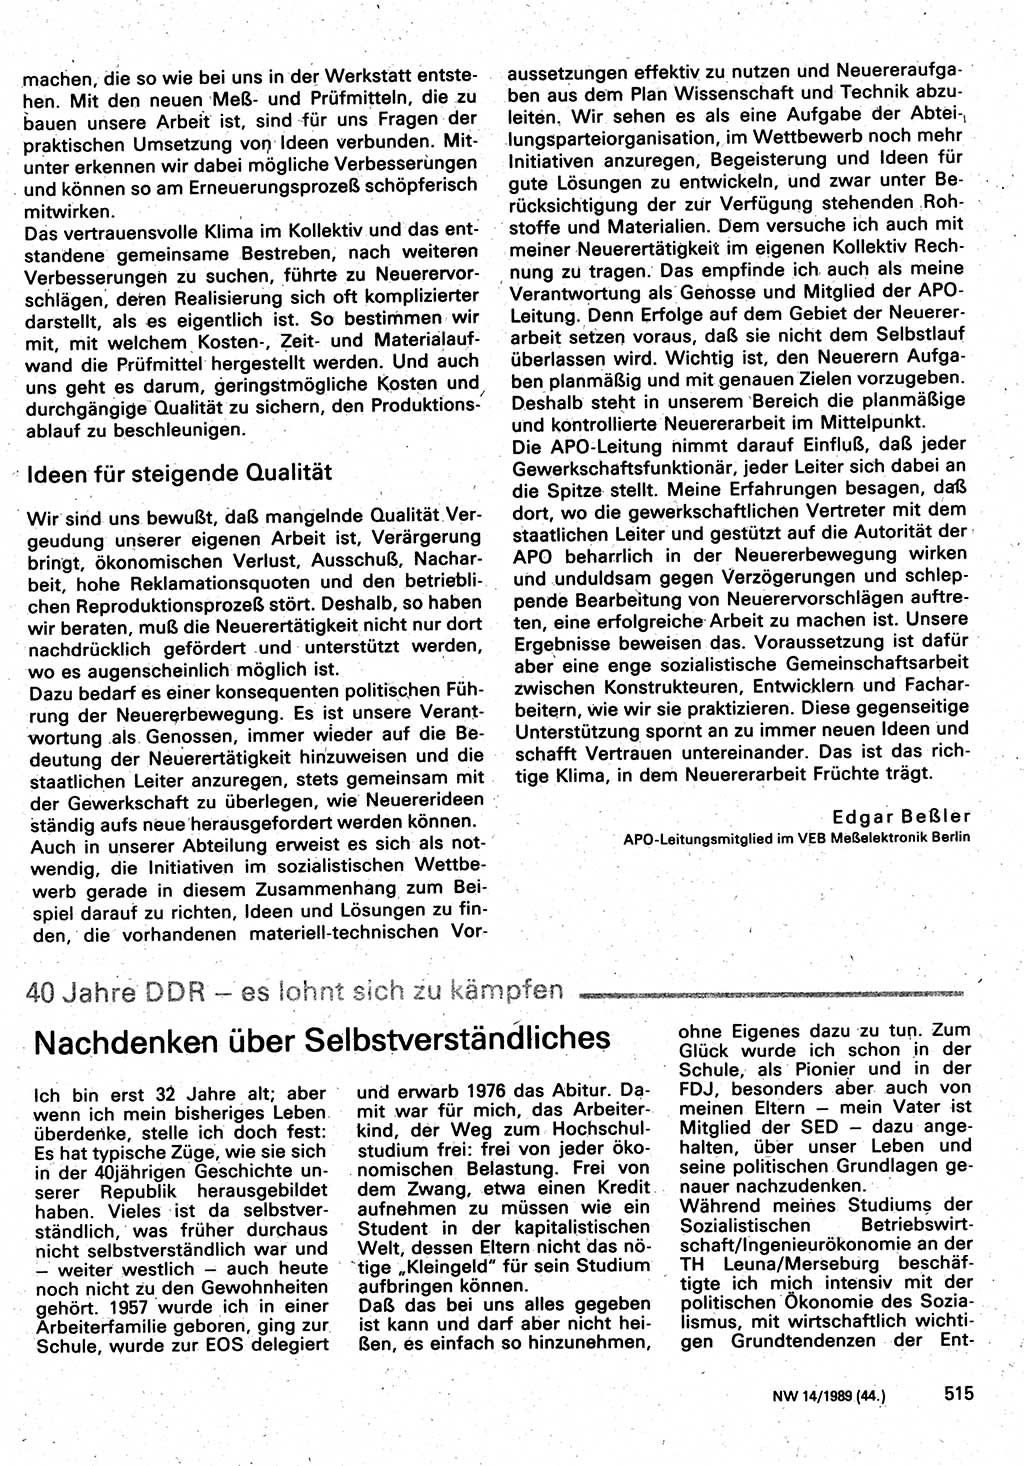 Neuer Weg (NW), Organ des Zentralkomitees (ZK) der SED (Sozialistische Einheitspartei Deutschlands) für Fragen des Parteilebens, 44. Jahrgang [Deutsche Demokratische Republik (DDR)] 1989, Seite 515 (NW ZK SED DDR 1989, S. 515)